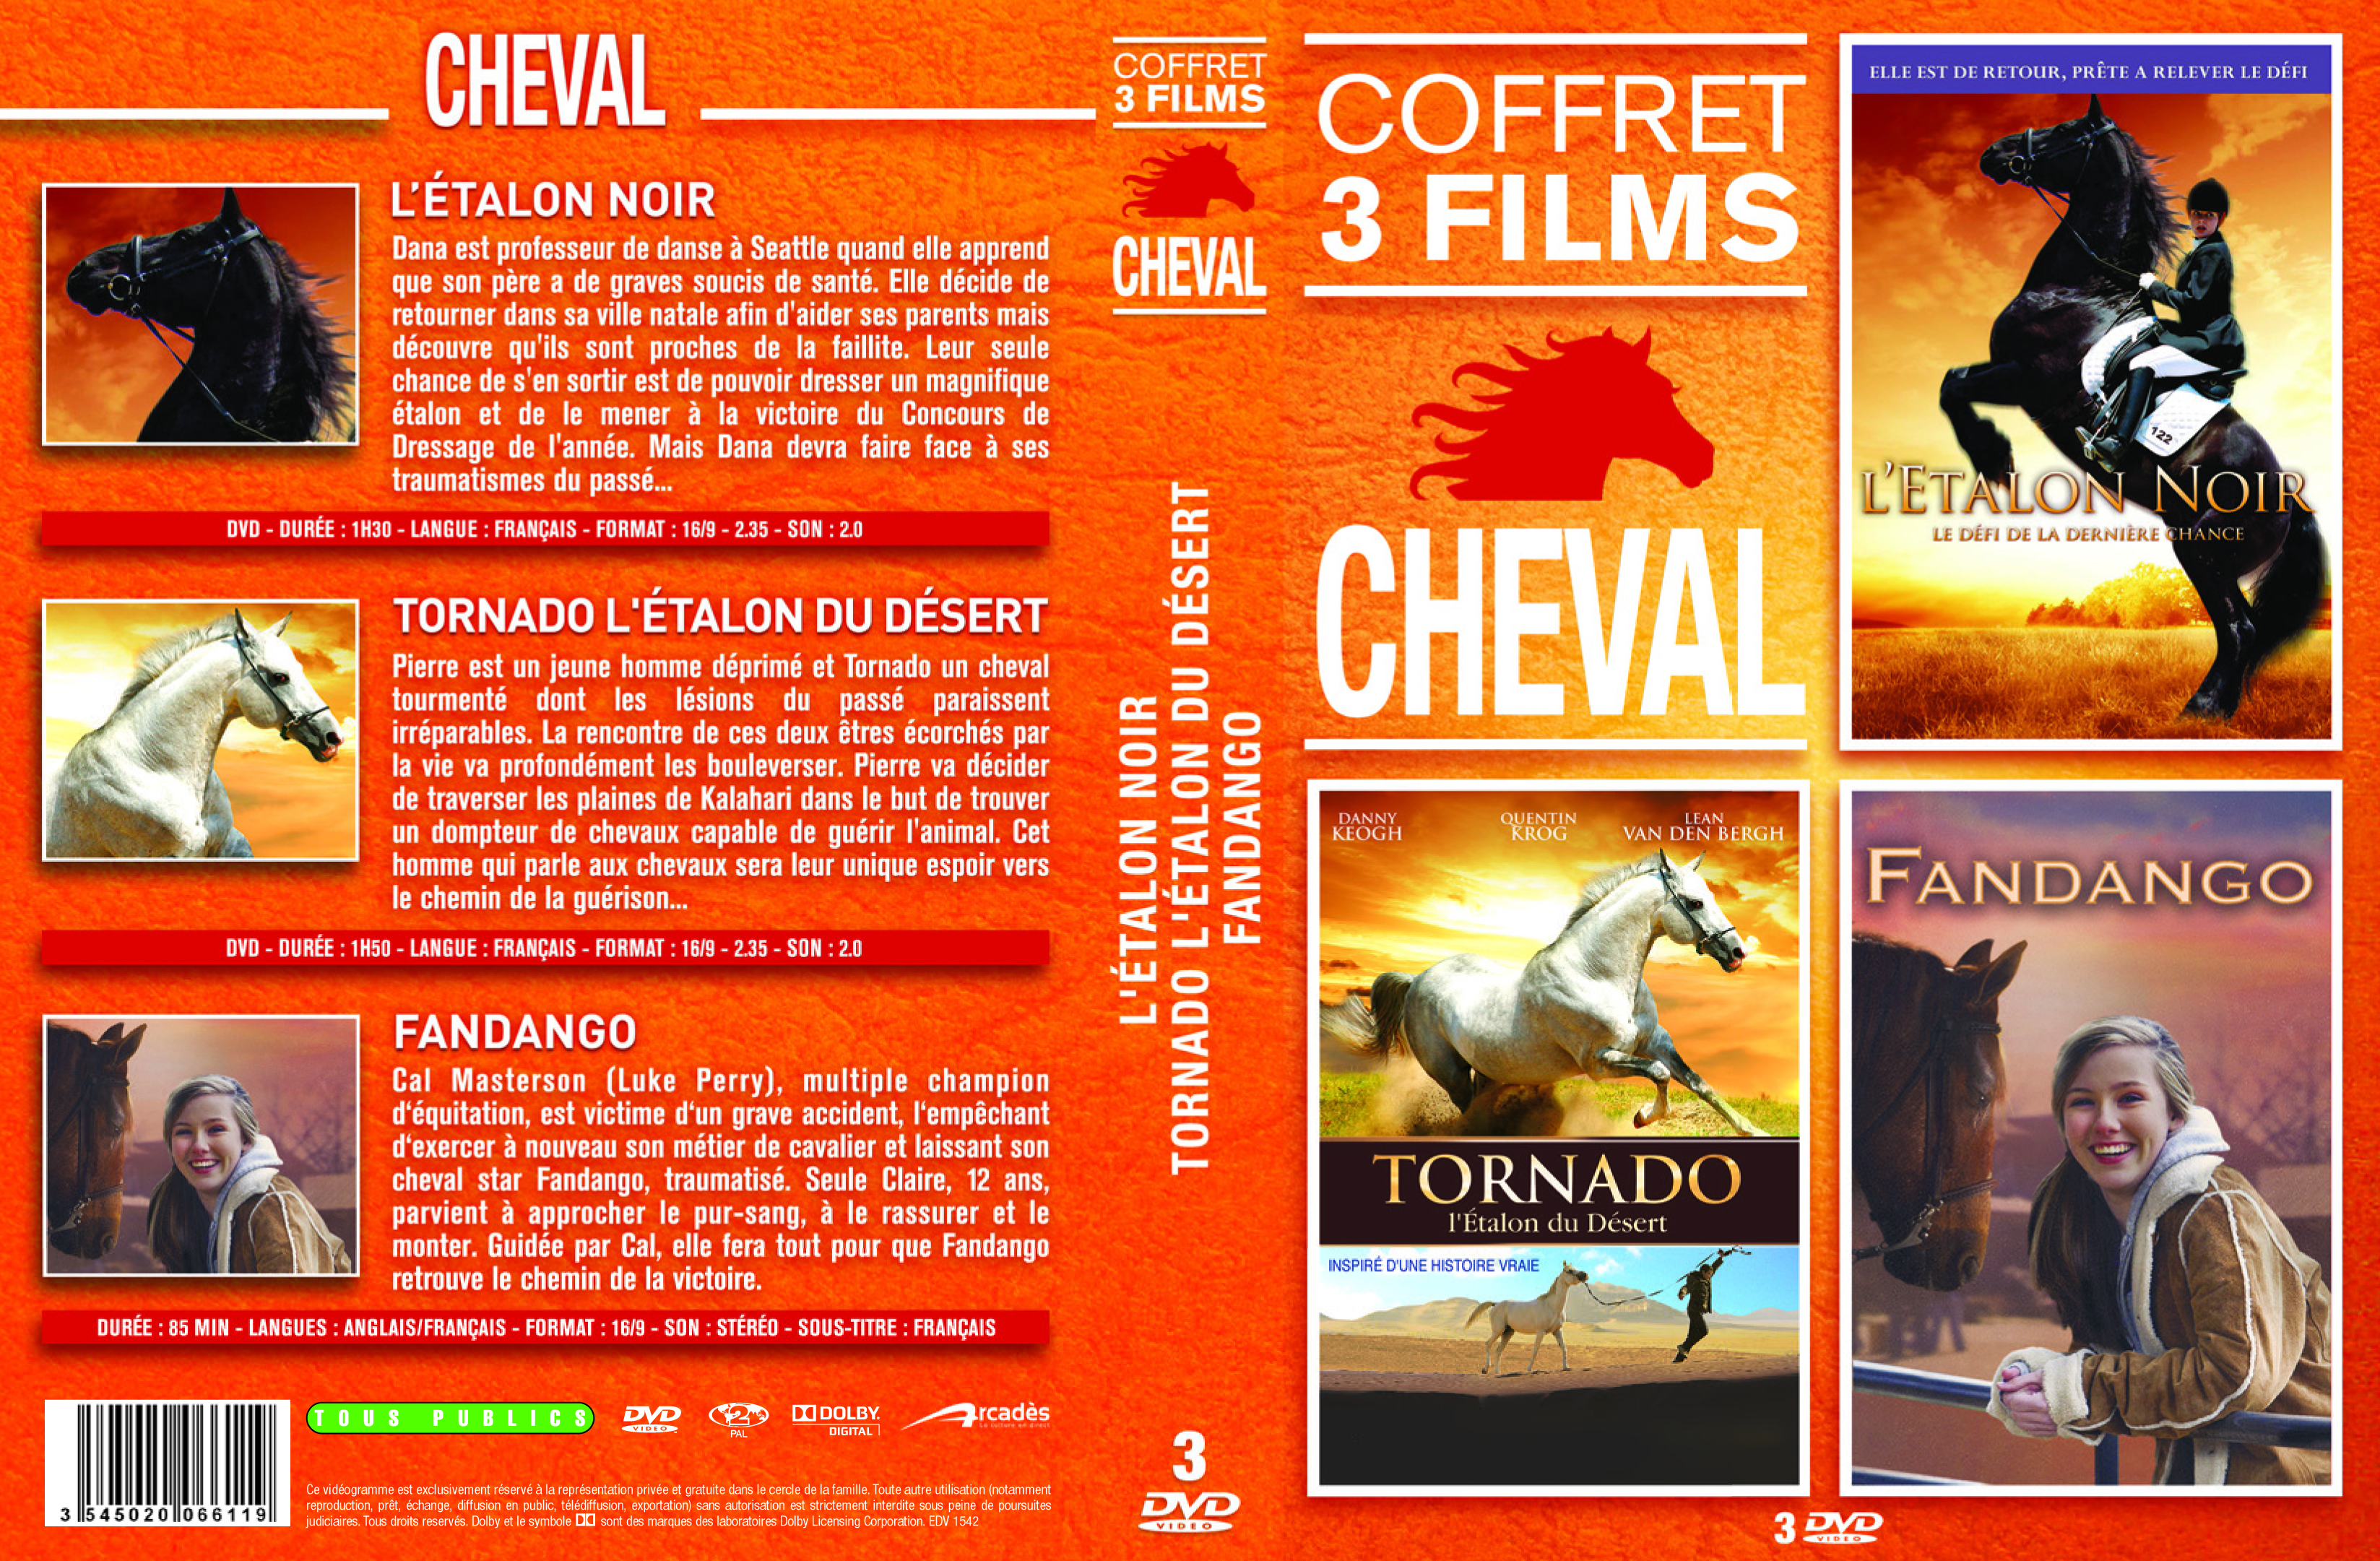 Jaquette DVD Cheval vol 1 COFFRET